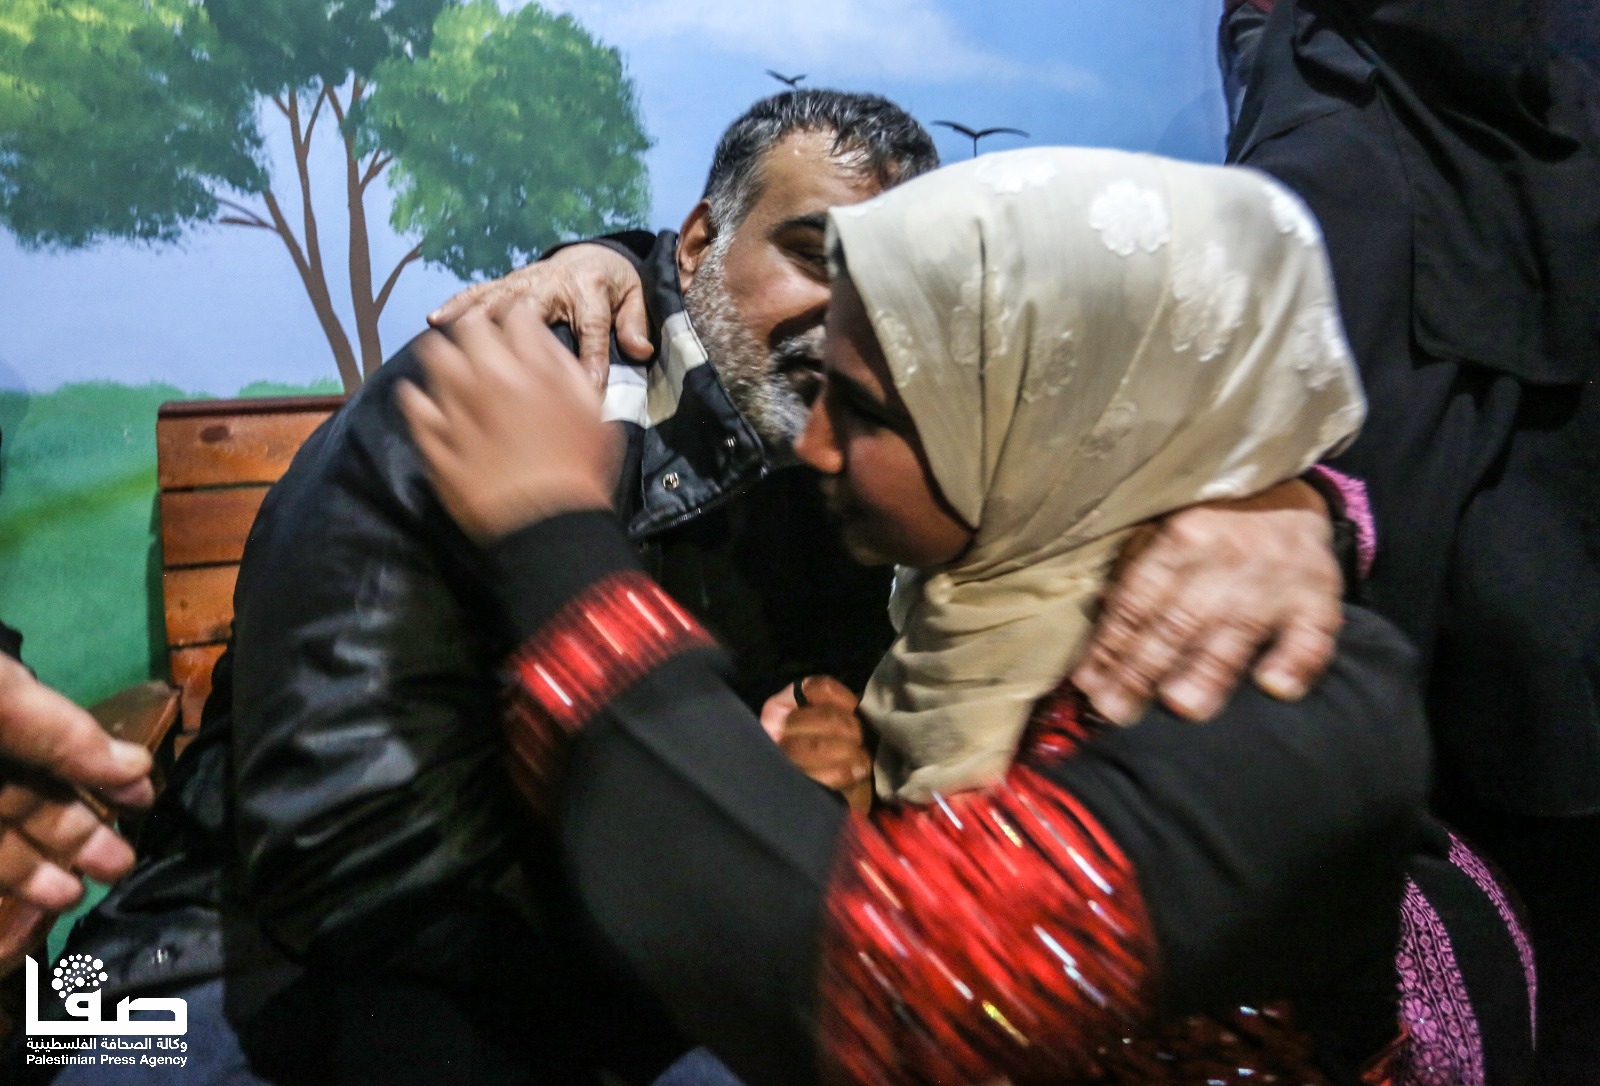 وكالة الصحافة الفلسطينية -  جُمانة  تطوي 17 سنة من الحرمان برؤية والدها المحرّر